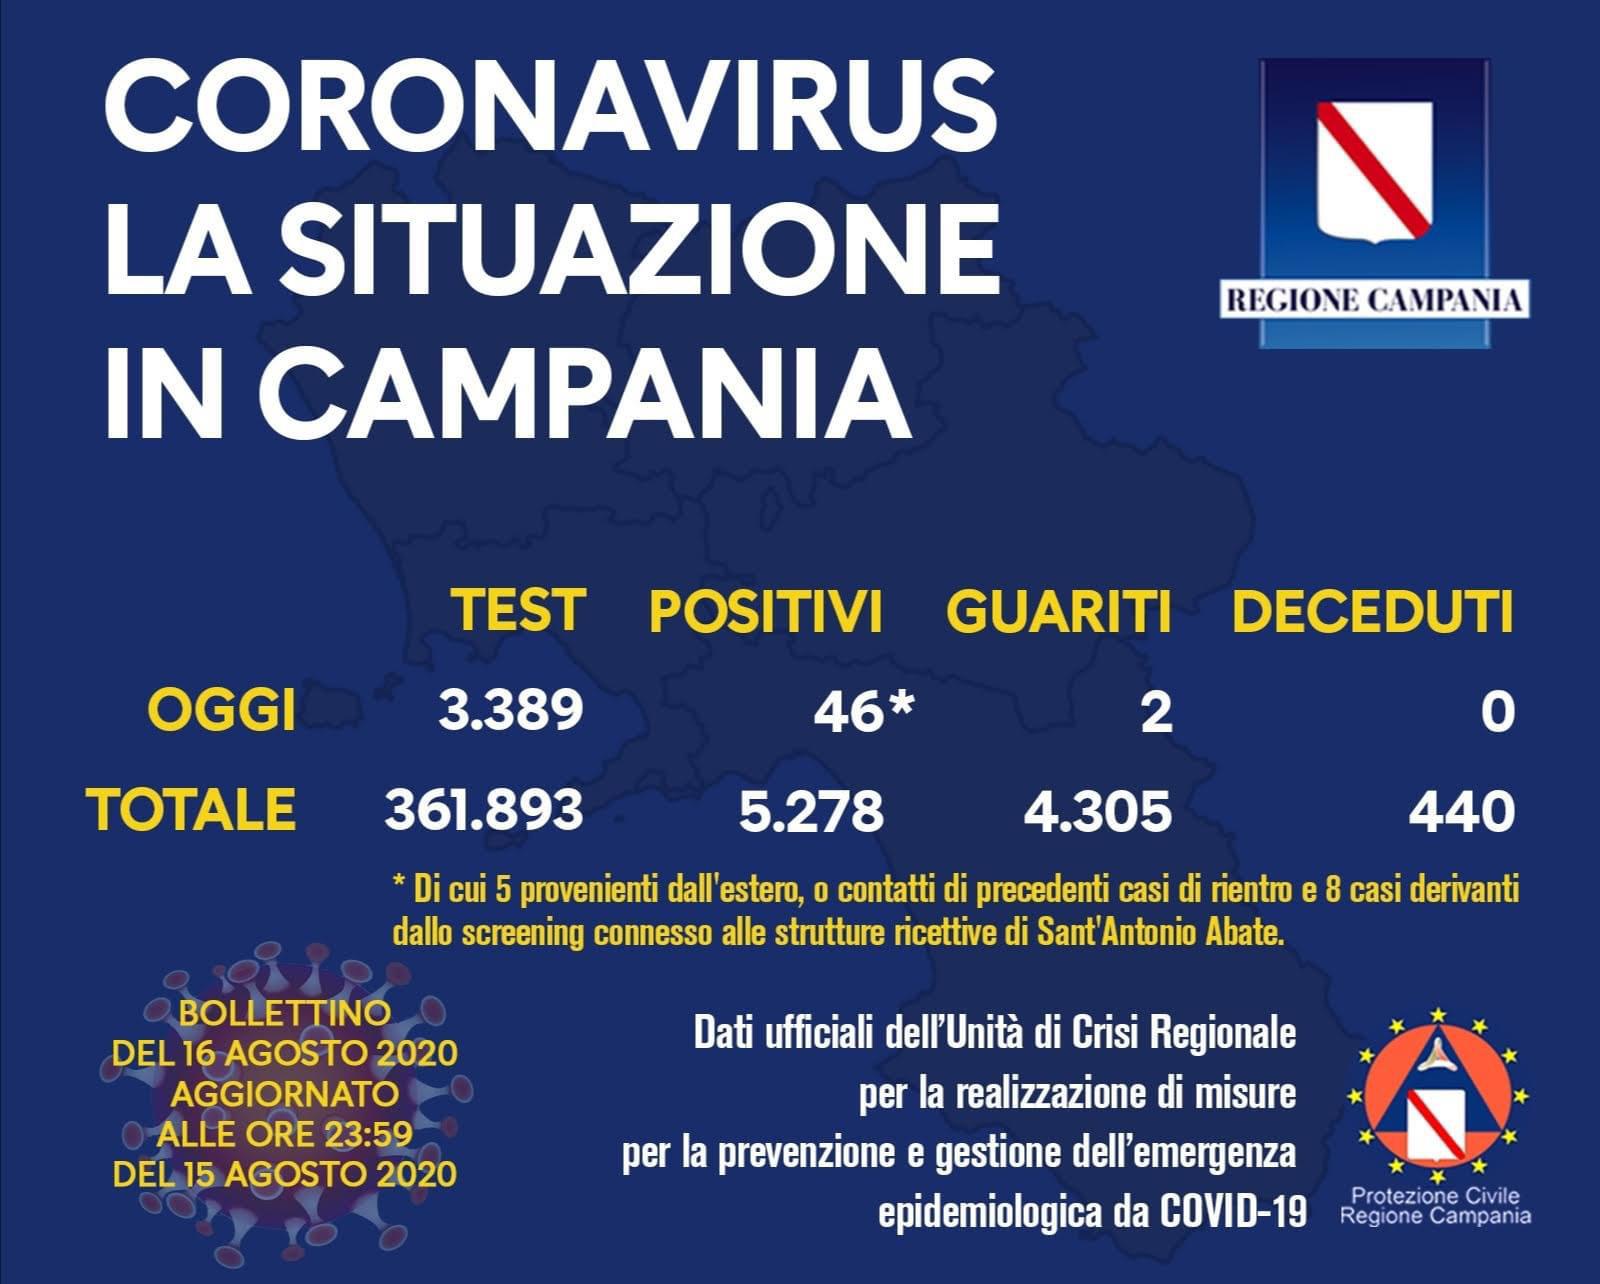 Coronavirus in Campania, i dati del 15 agosto: 46 nuovi positivi